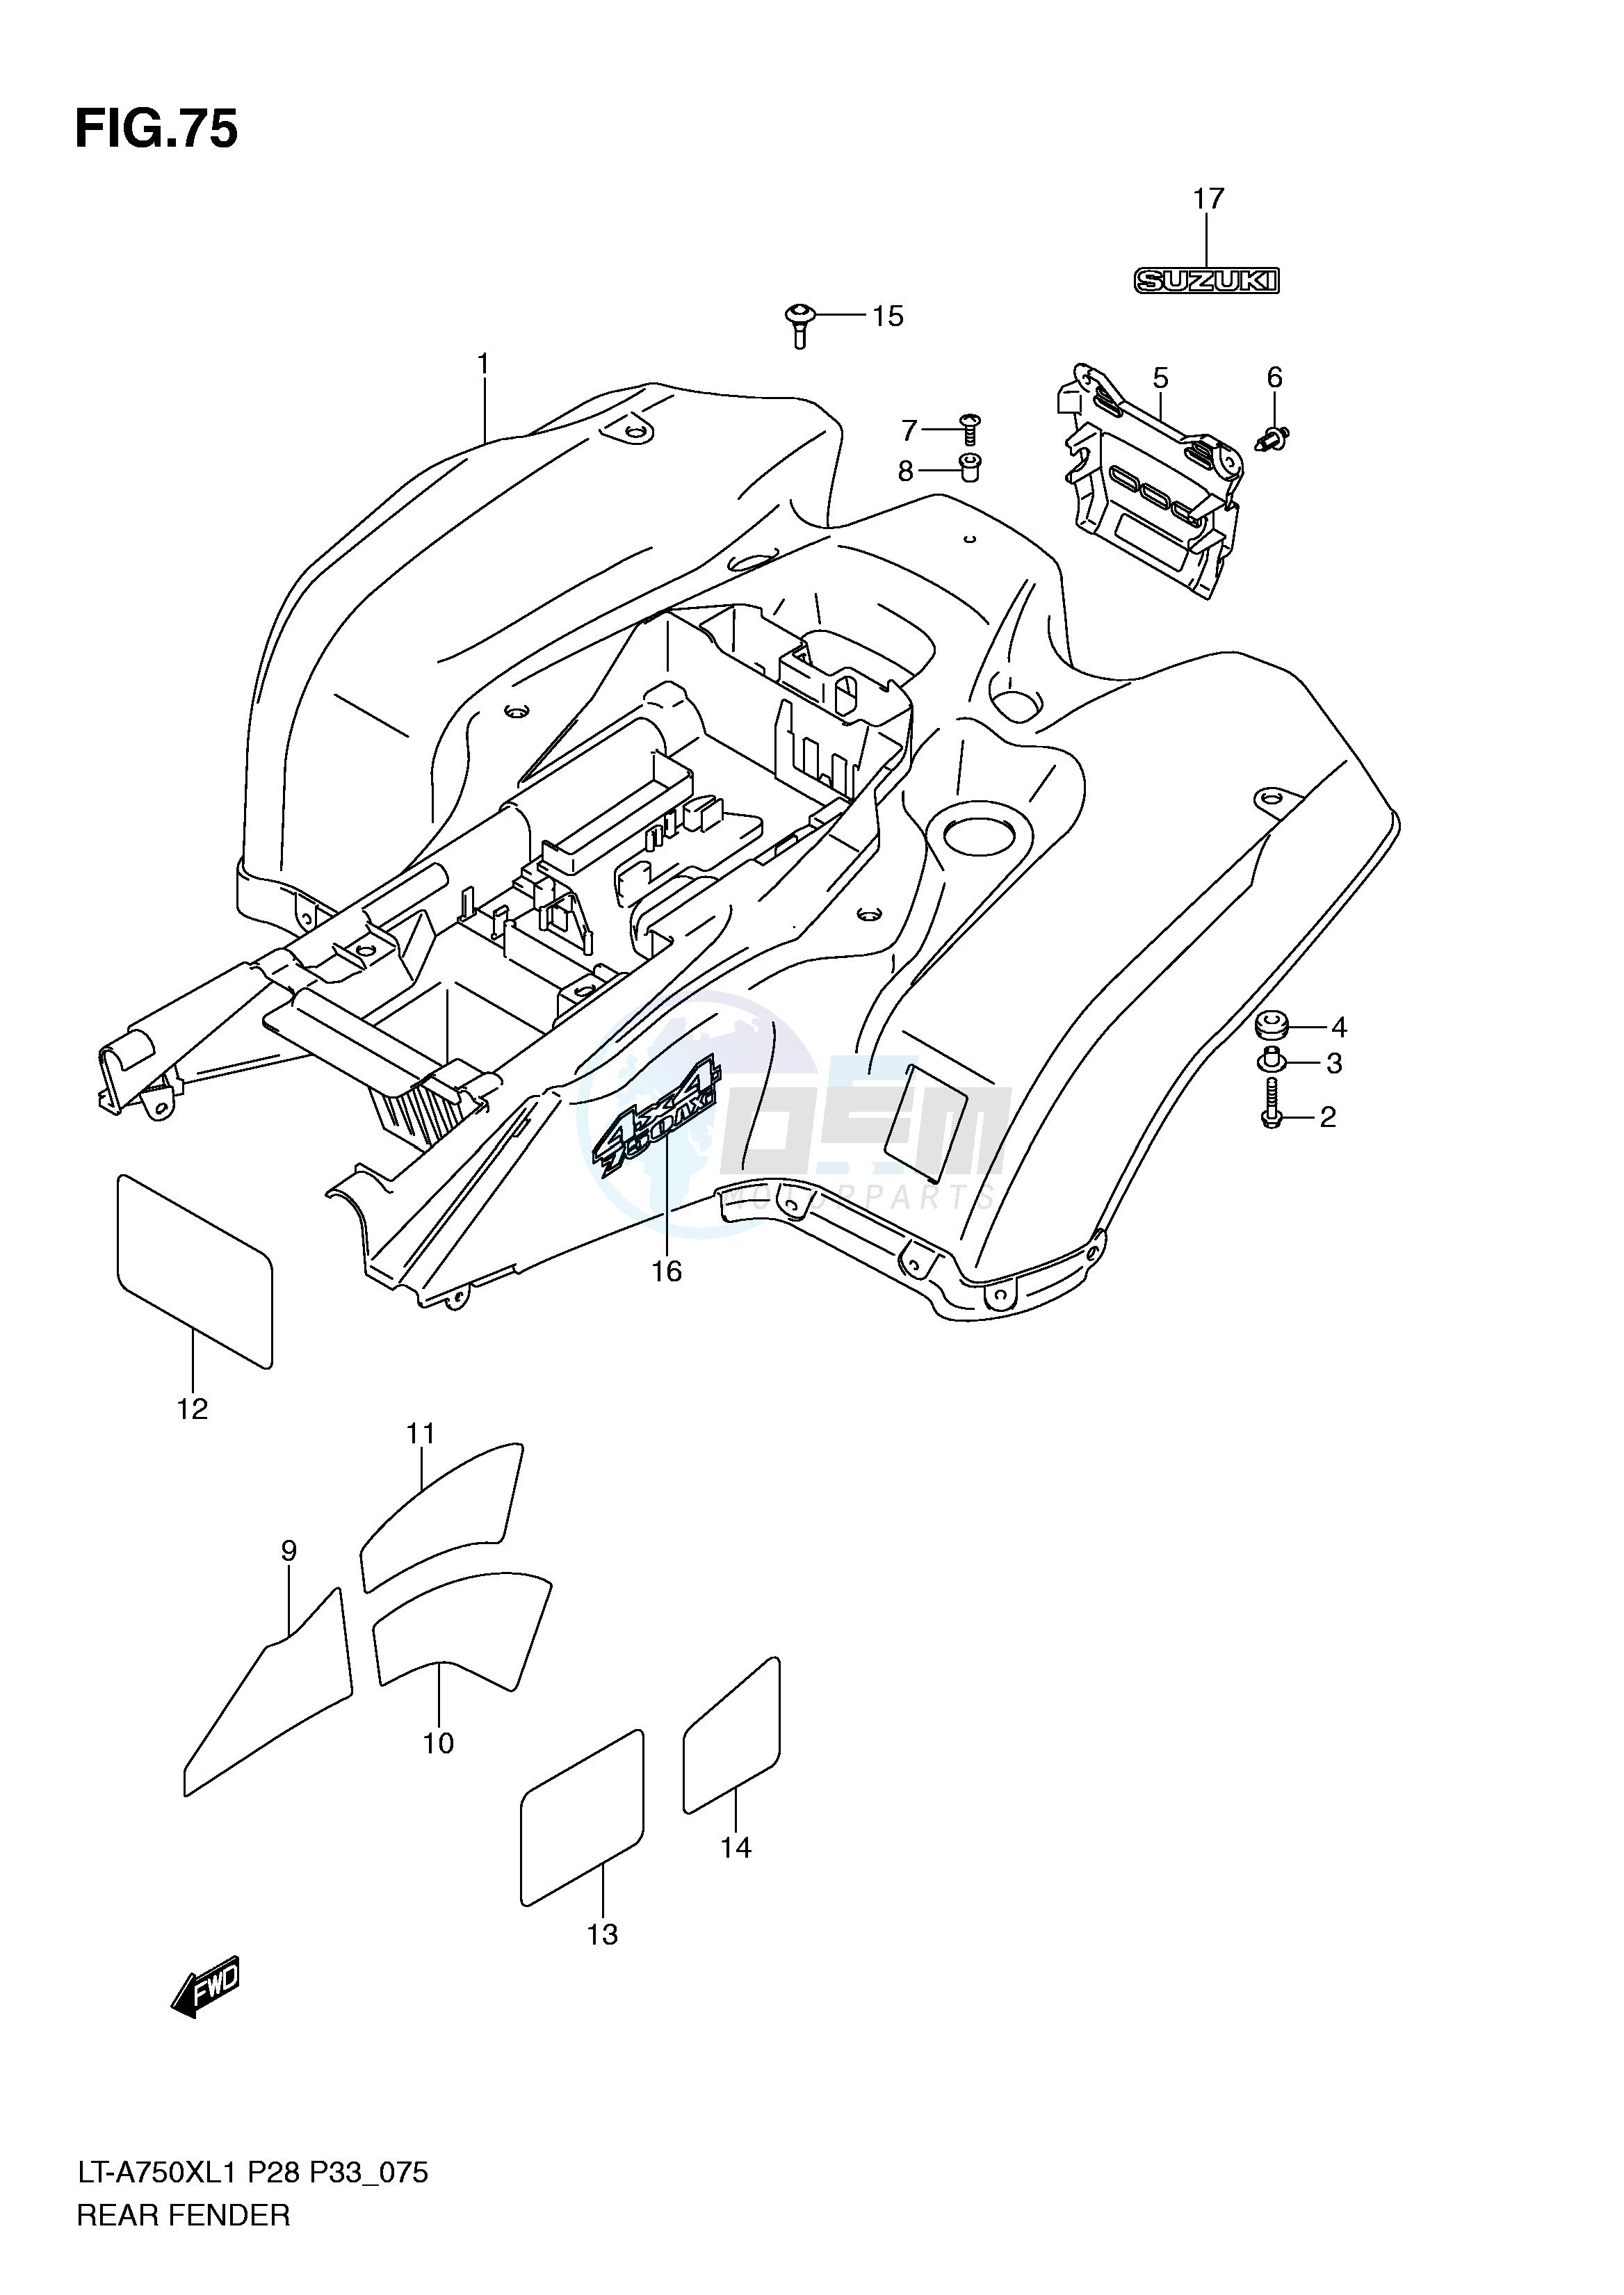 REAR FENDER (LT-A750XL1 P33) blueprint